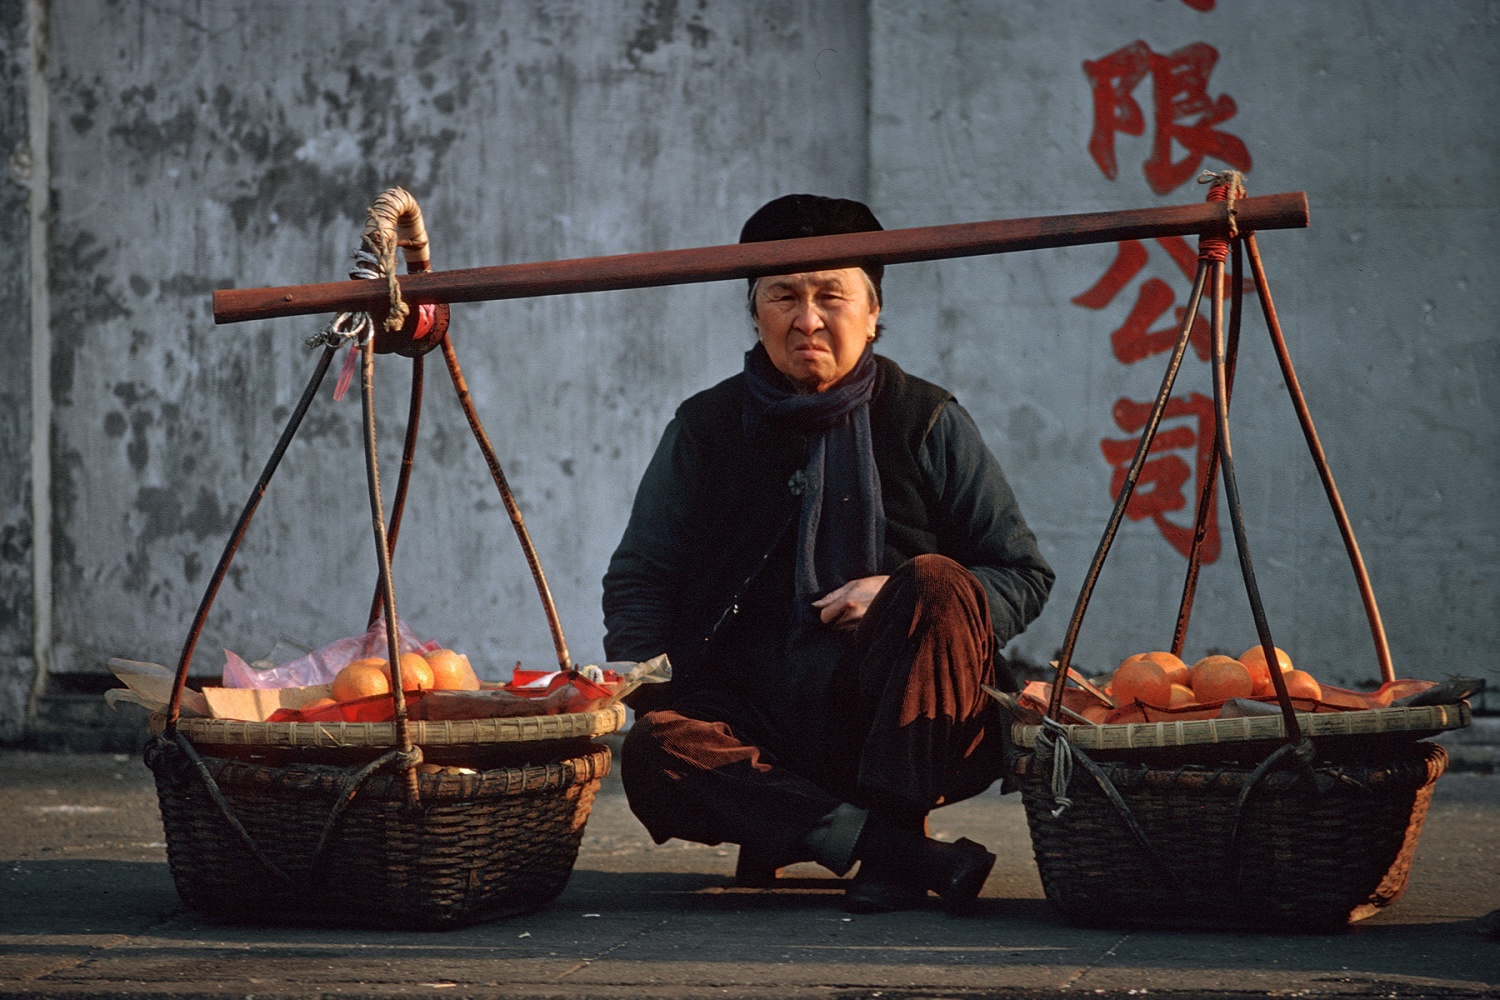 bill-hocker-wan-chai-hong-kong-1974